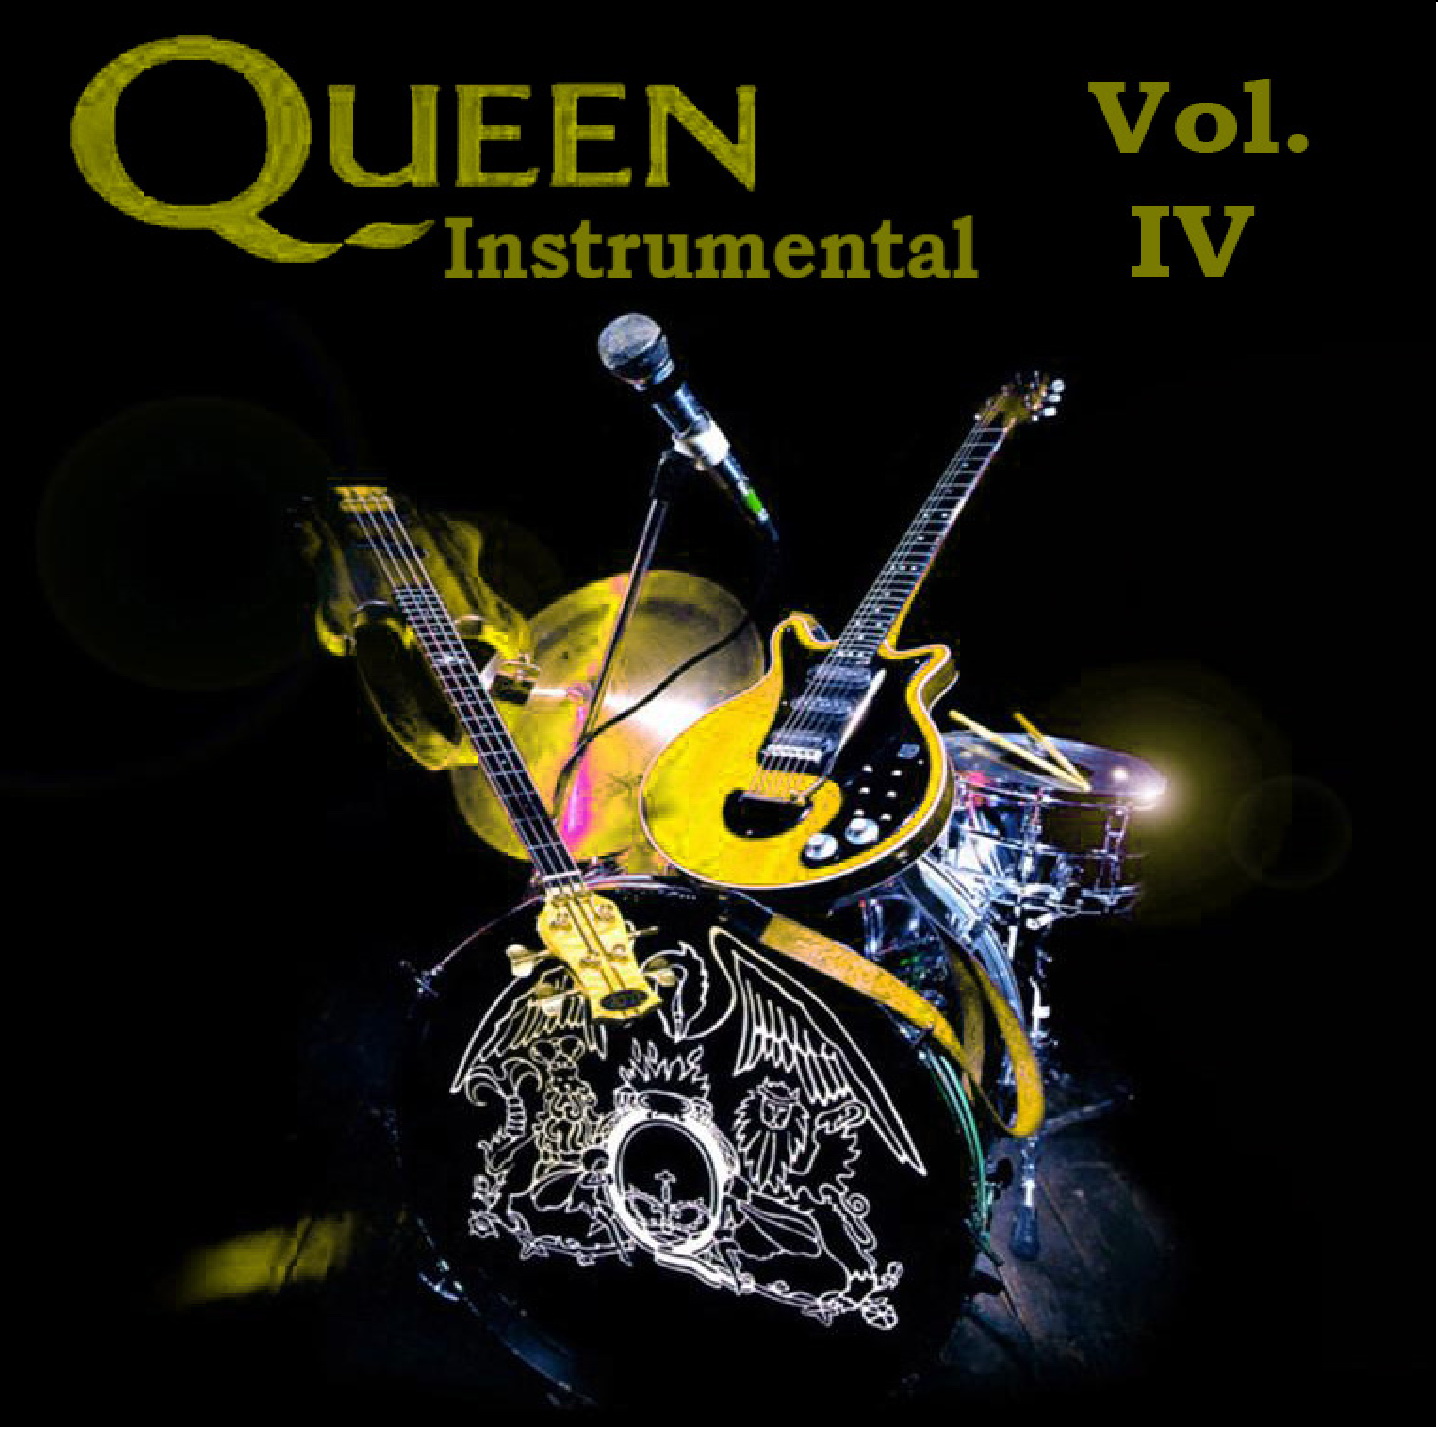  أجمل المقطوعات الموسيقية الاجنبية Sax Instrumental music  Queen+Instrumental+Vol+IV+Frontal